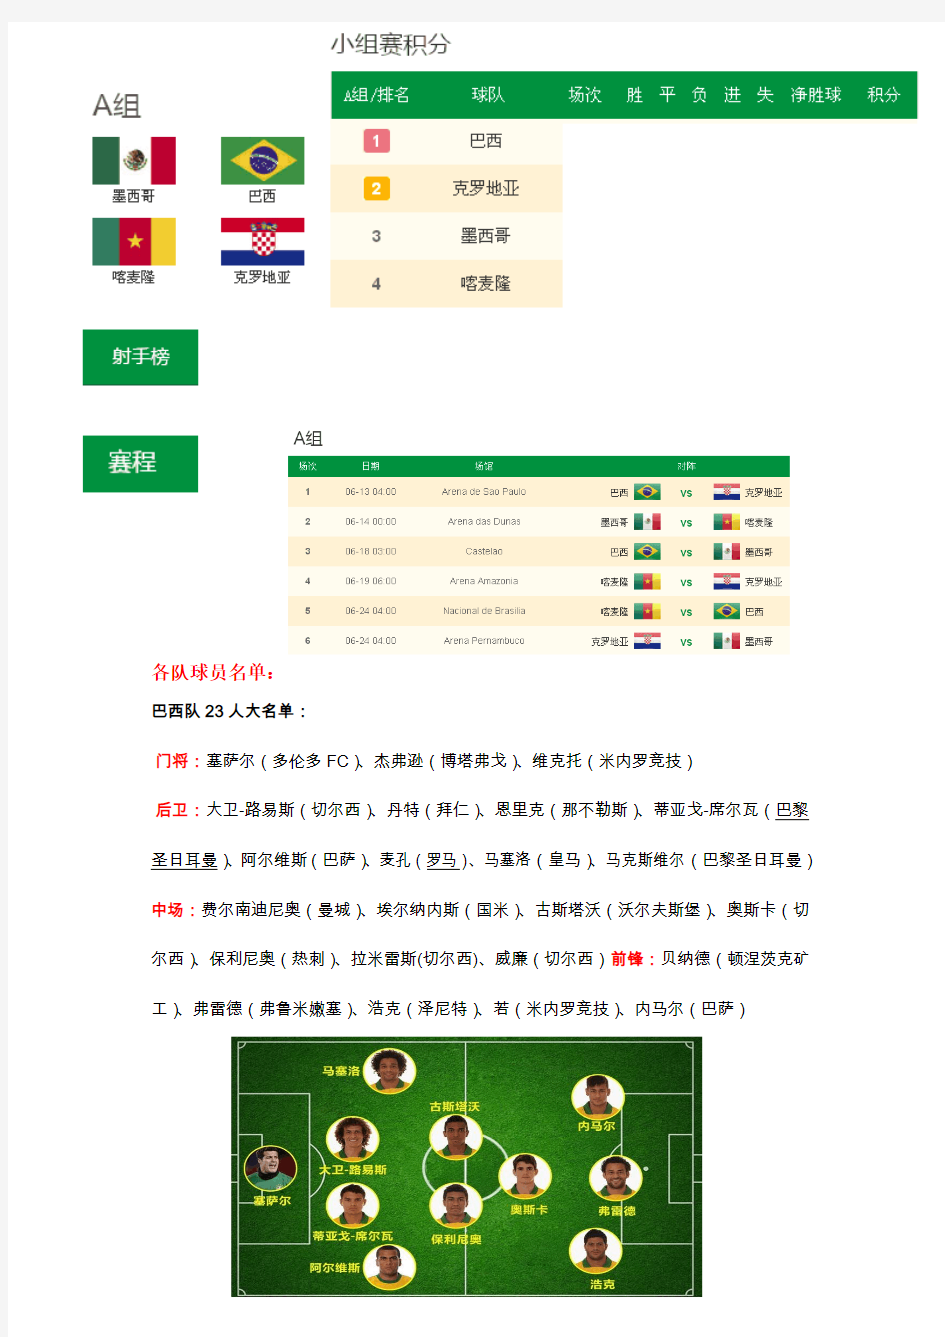 2014年世界杯看球数据手册